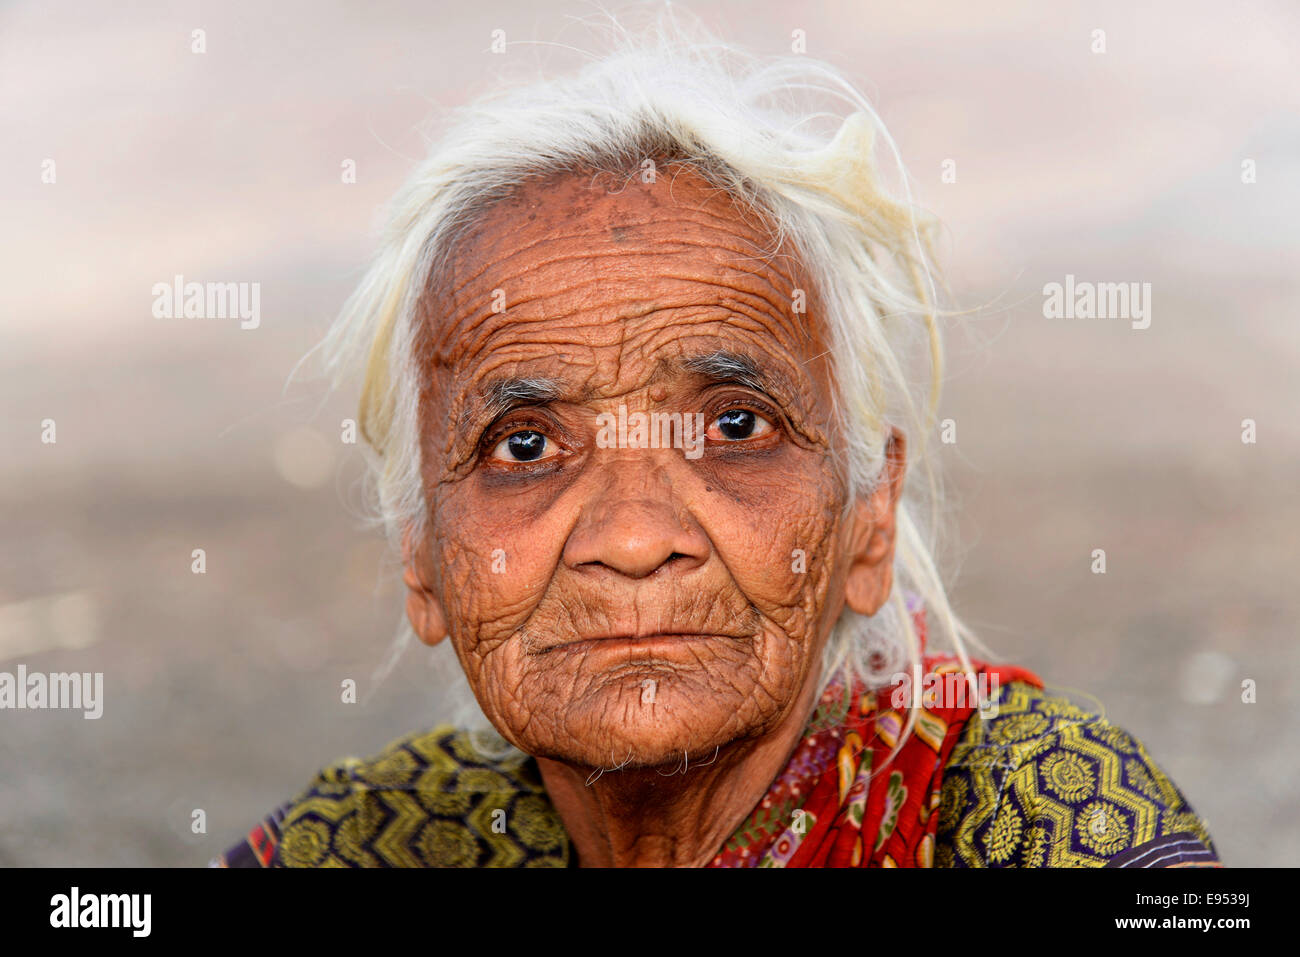 Vieille Femme indienne, portrait, Mumbai, Maharashtra, Inde Banque D'Images